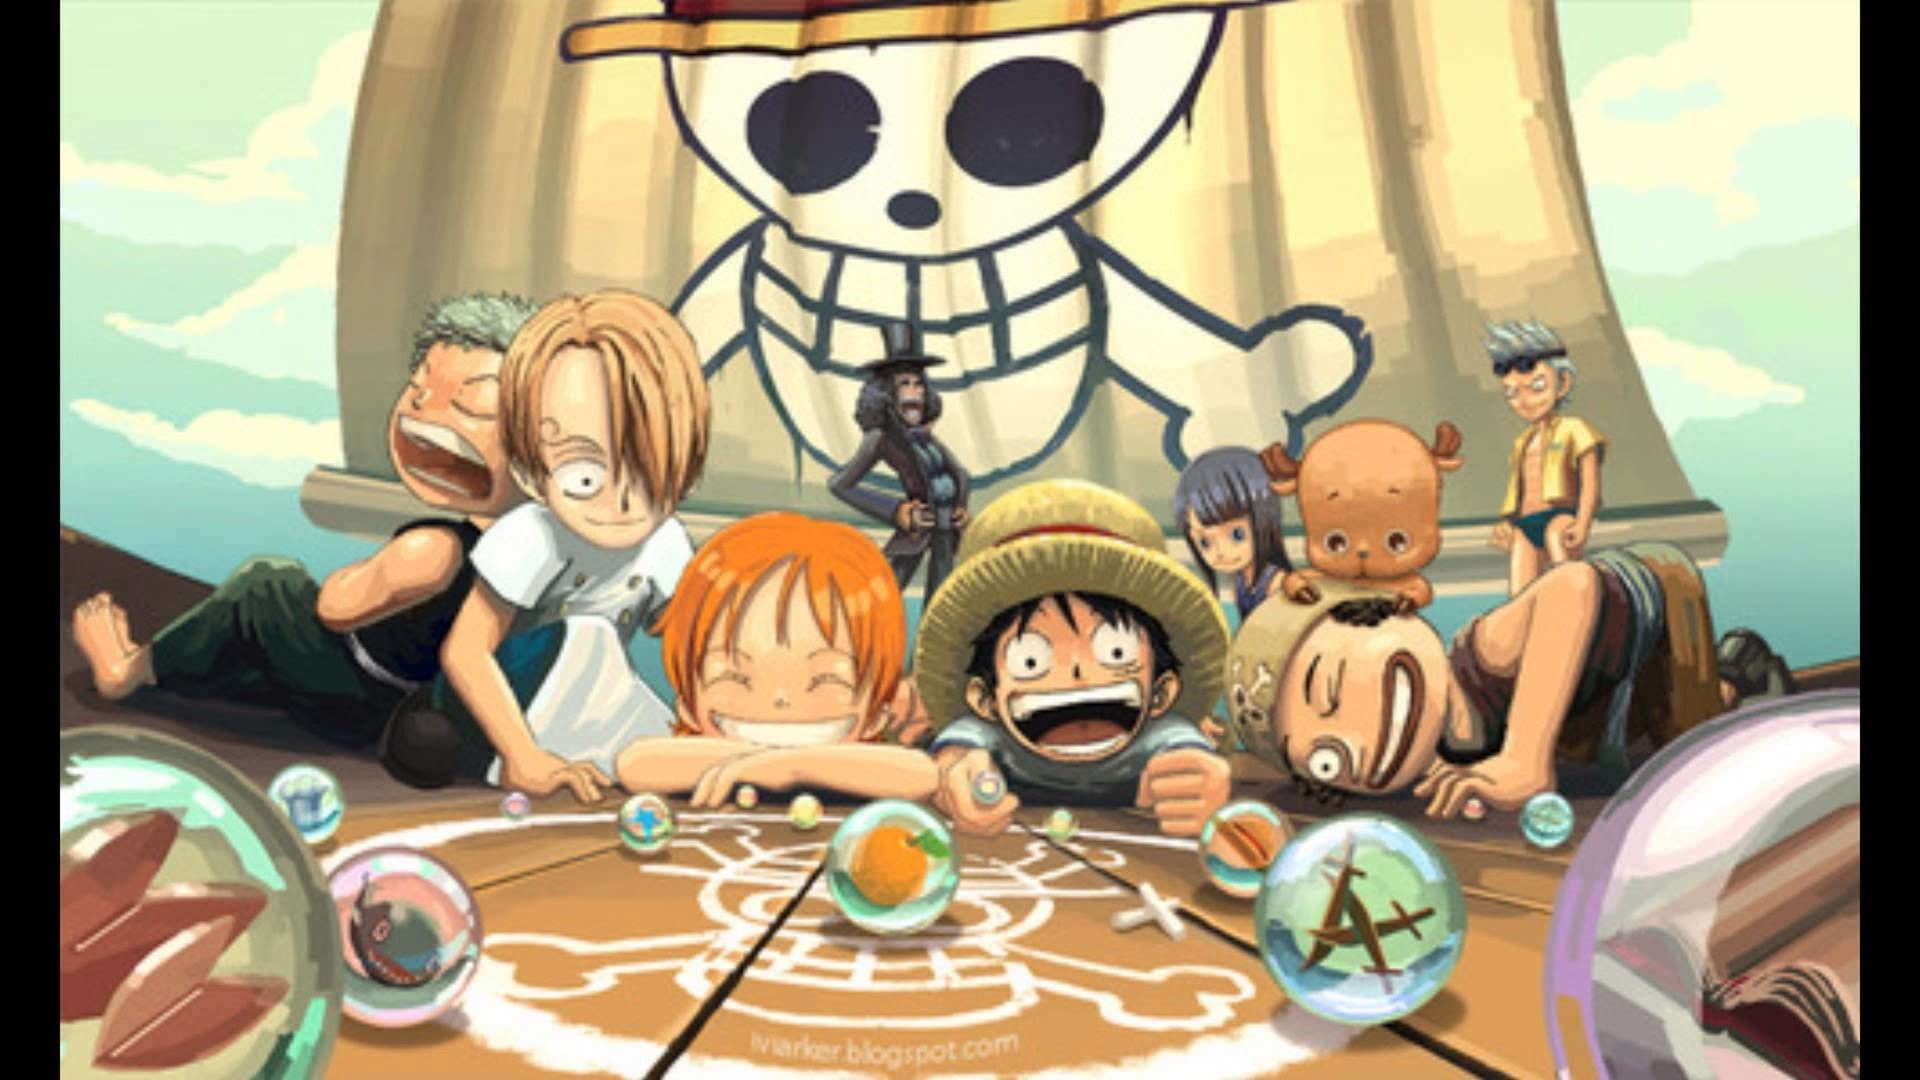 Desktop One Piece Aesthetic Wallpapers - Wallpaper Cave